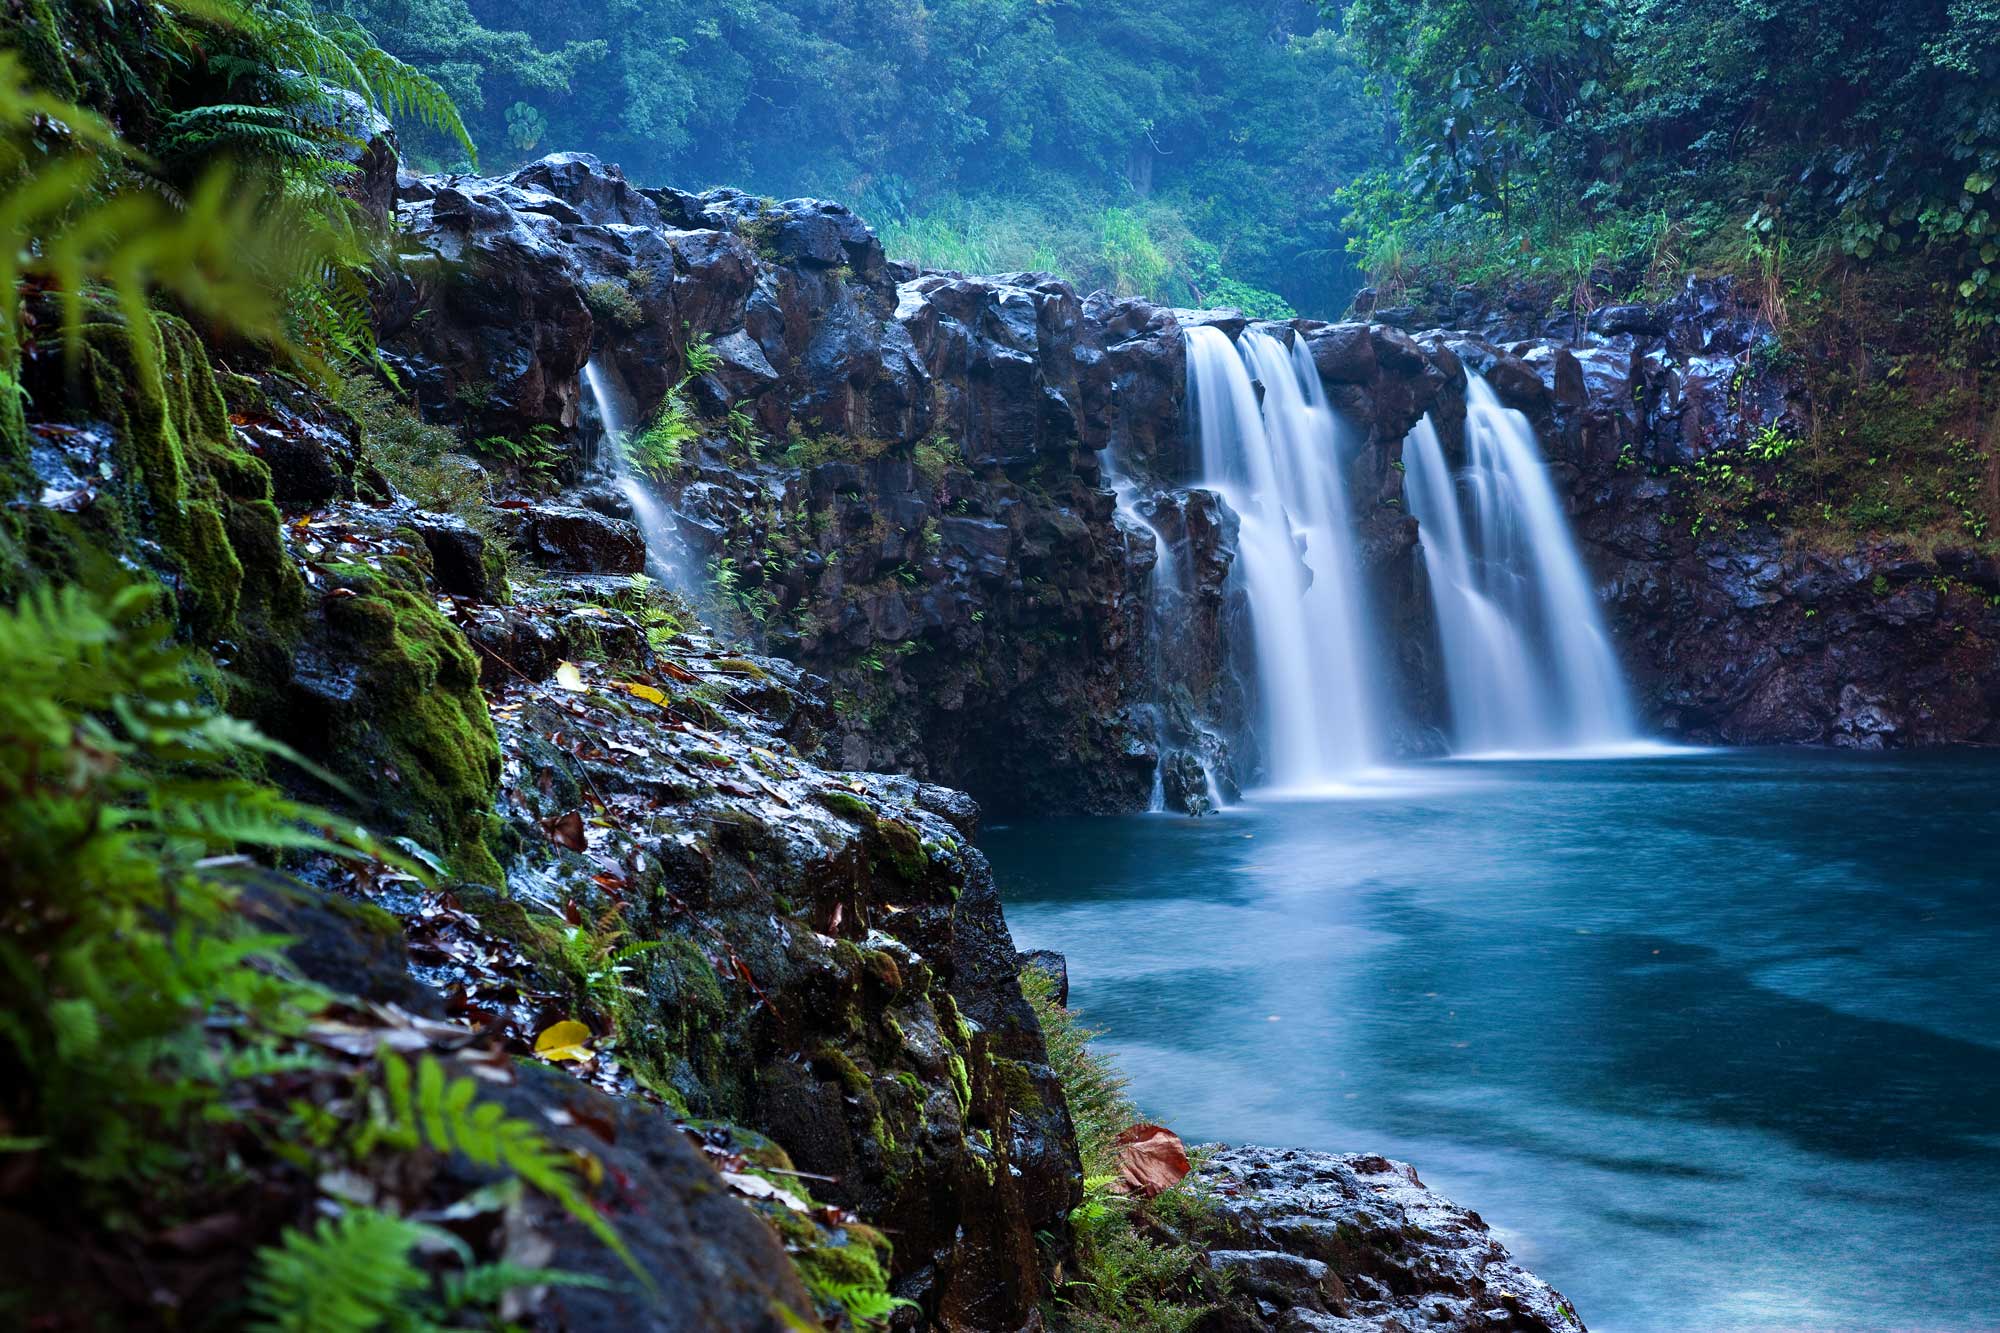 Hawaii island wedding venue: The Falls at Reed’s Island